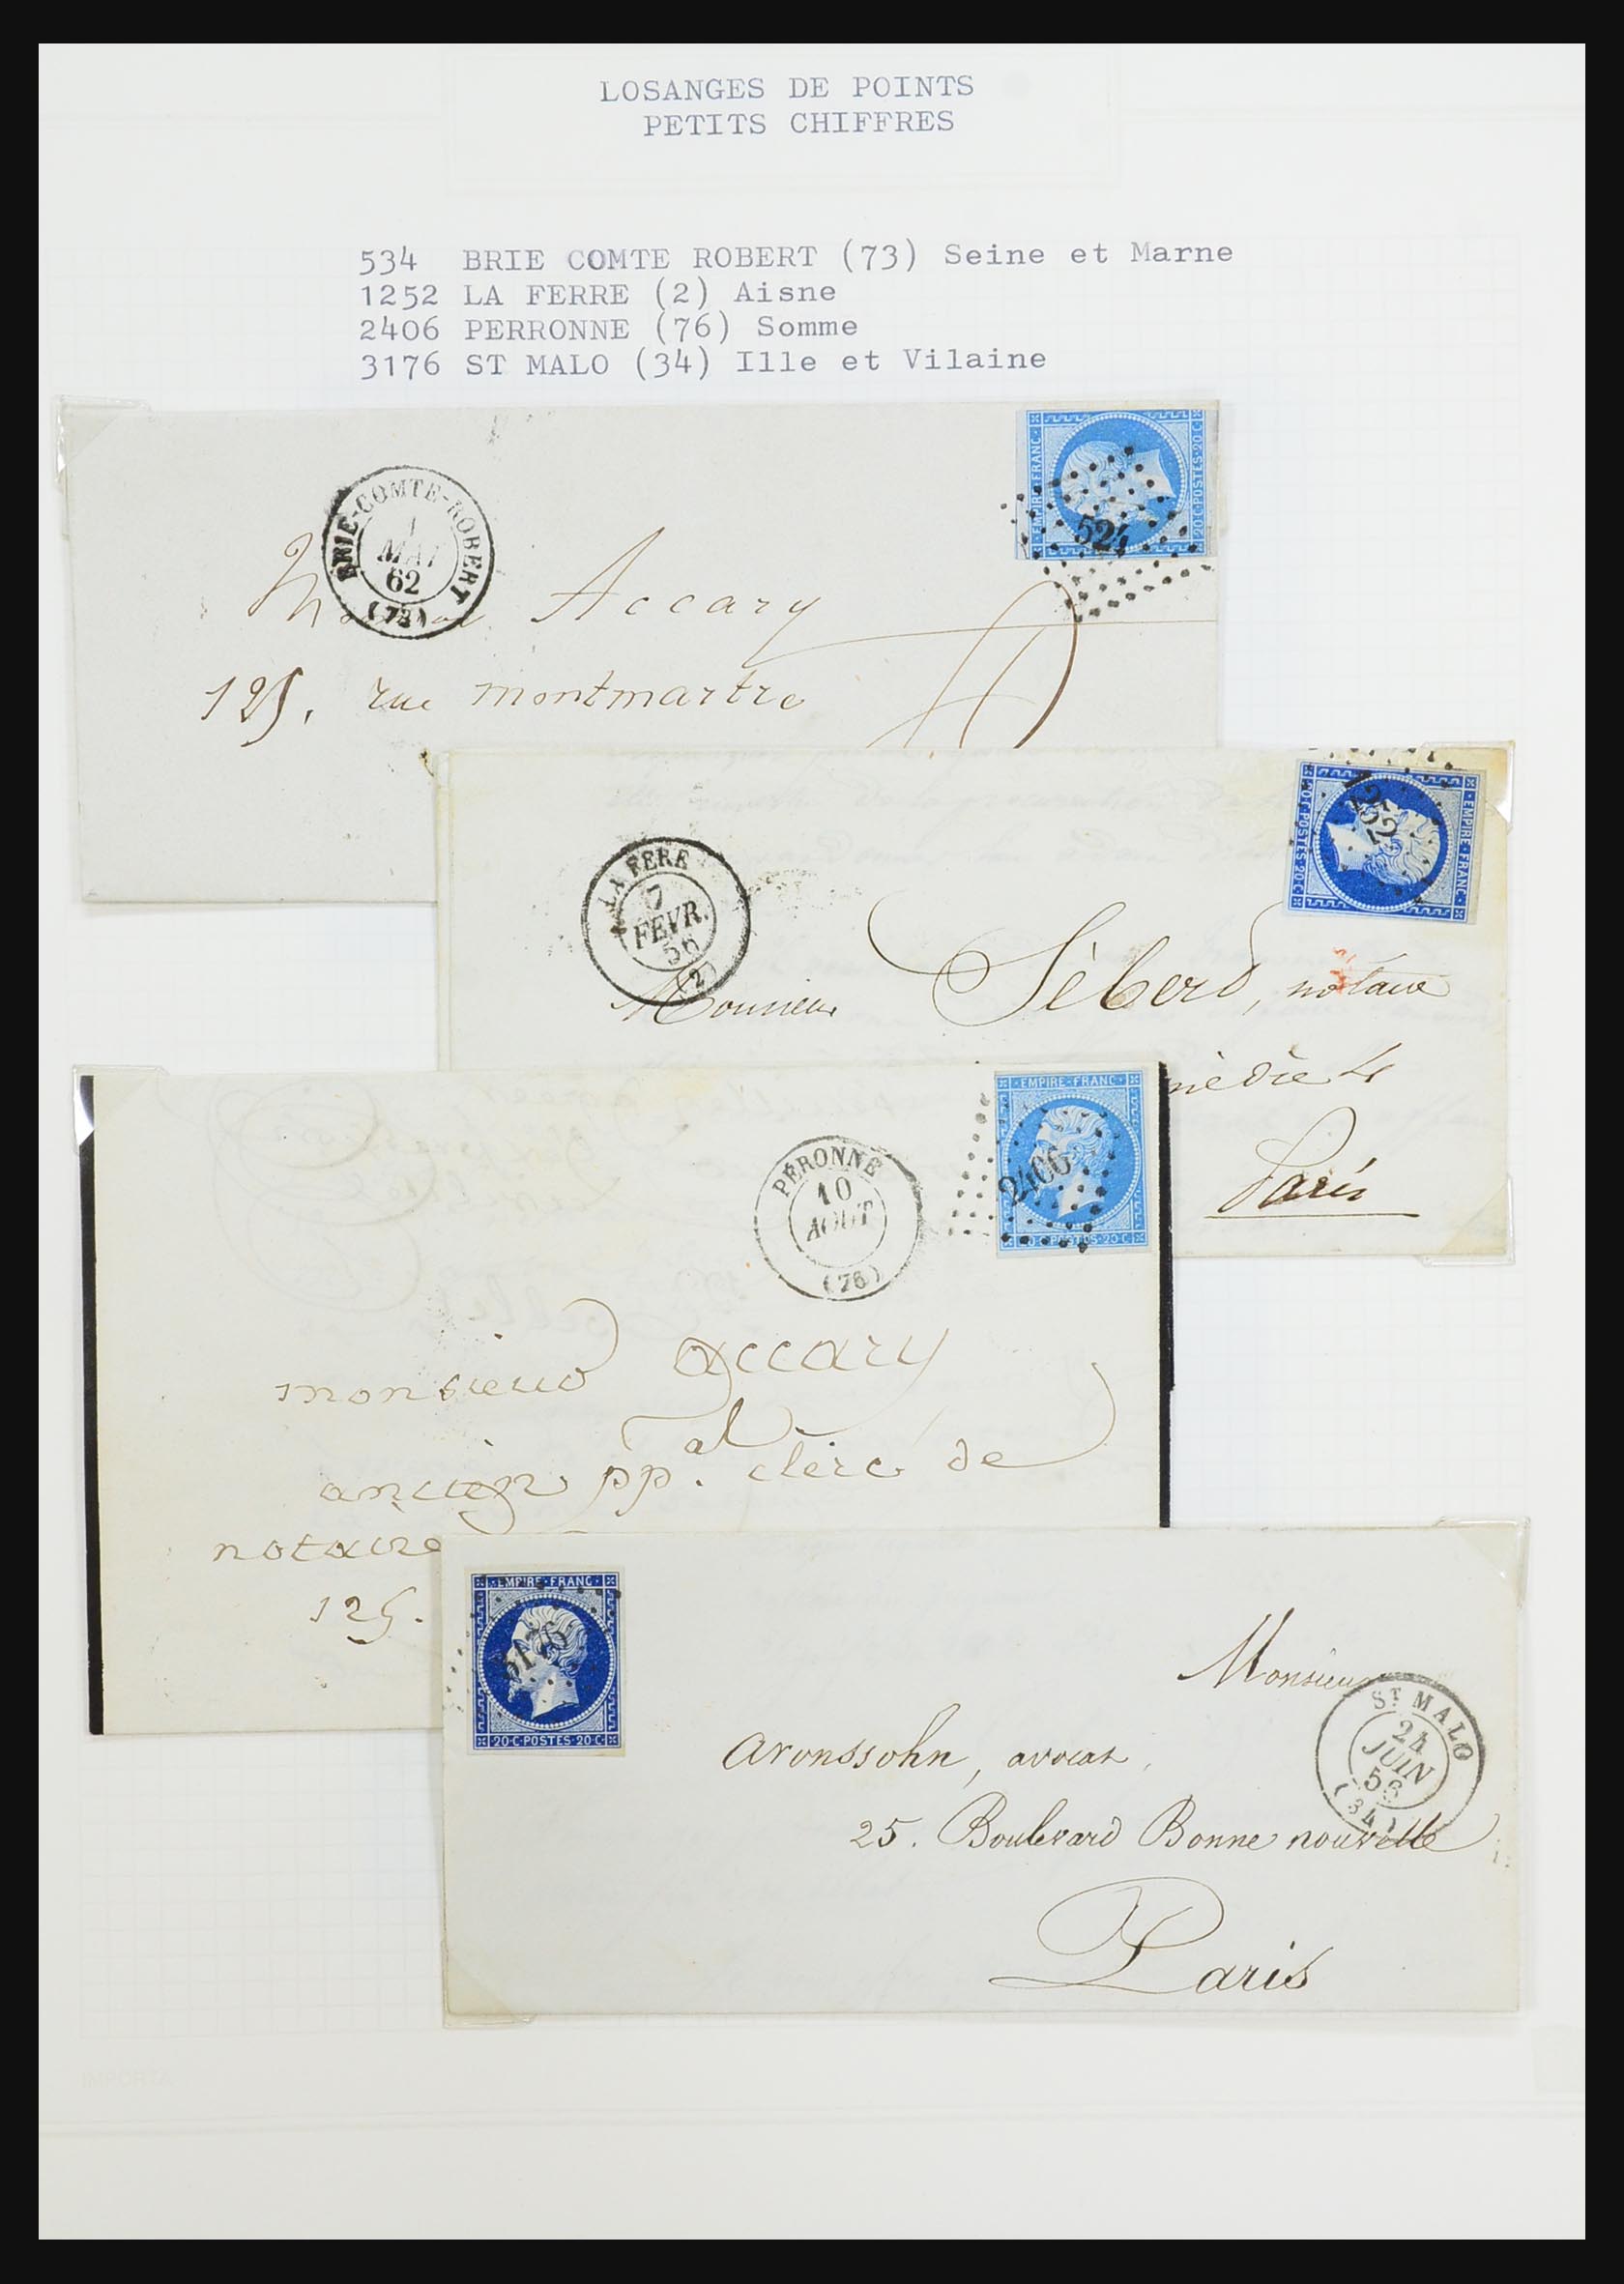 31526 033 - 31526 Frankrijk brieven en stempels 1725 (!)-1900.